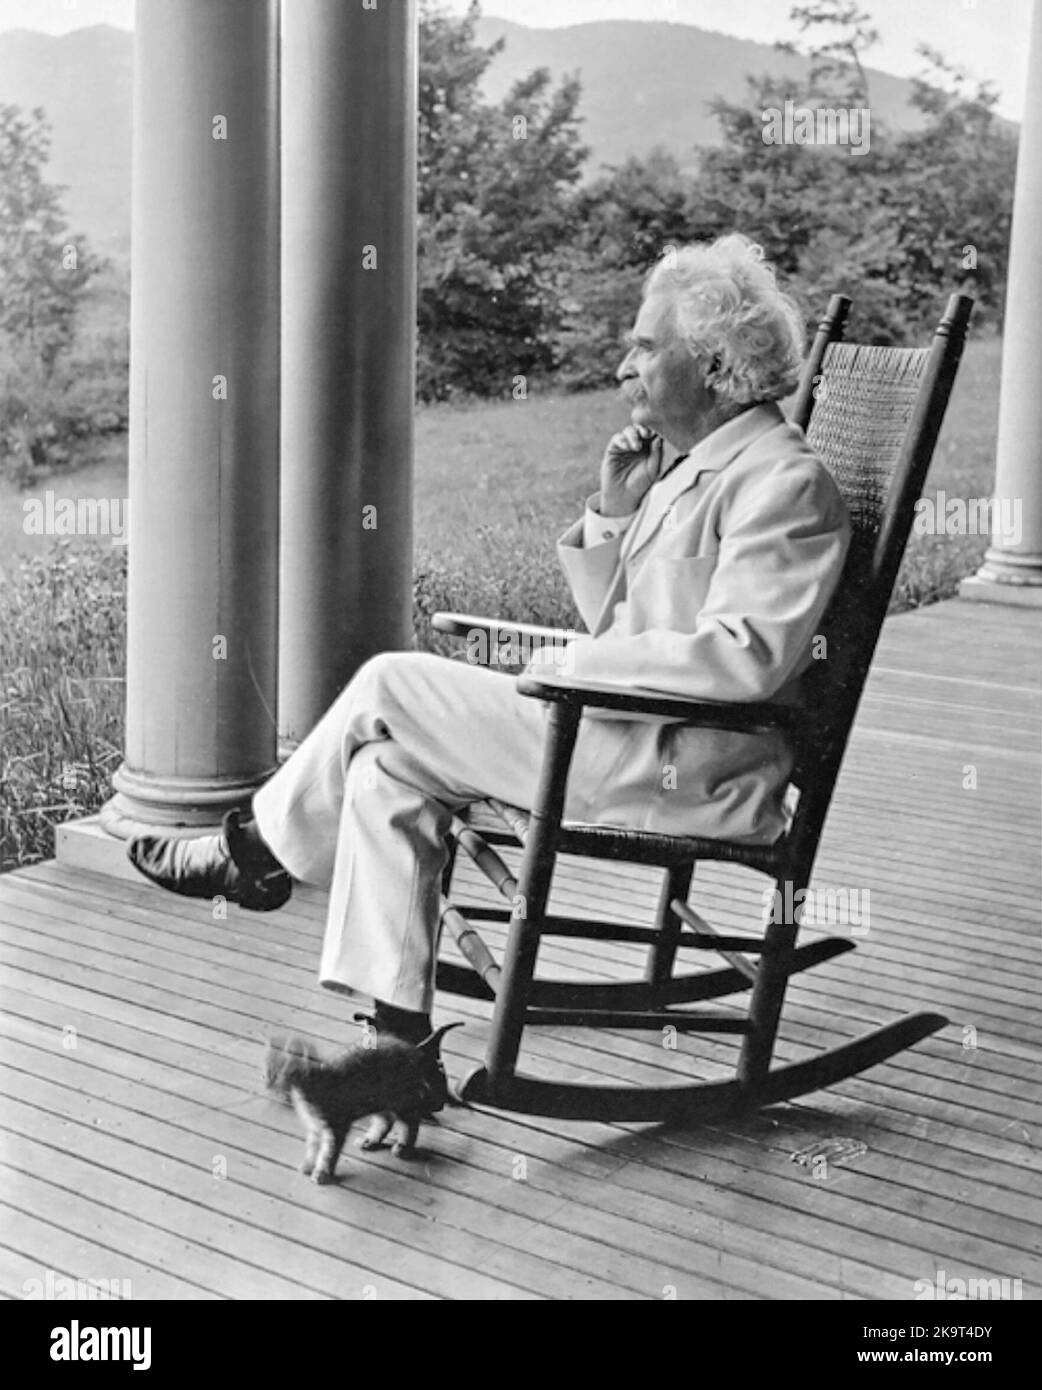 Umorista e scrittore americano, Samuel Langhorne Clemens (noto con il suo nome di penna, Mark Twain), seduto su una sedia a dondolo verandah a Dublino, New Hampshire, 1906-1908. Foto Stock